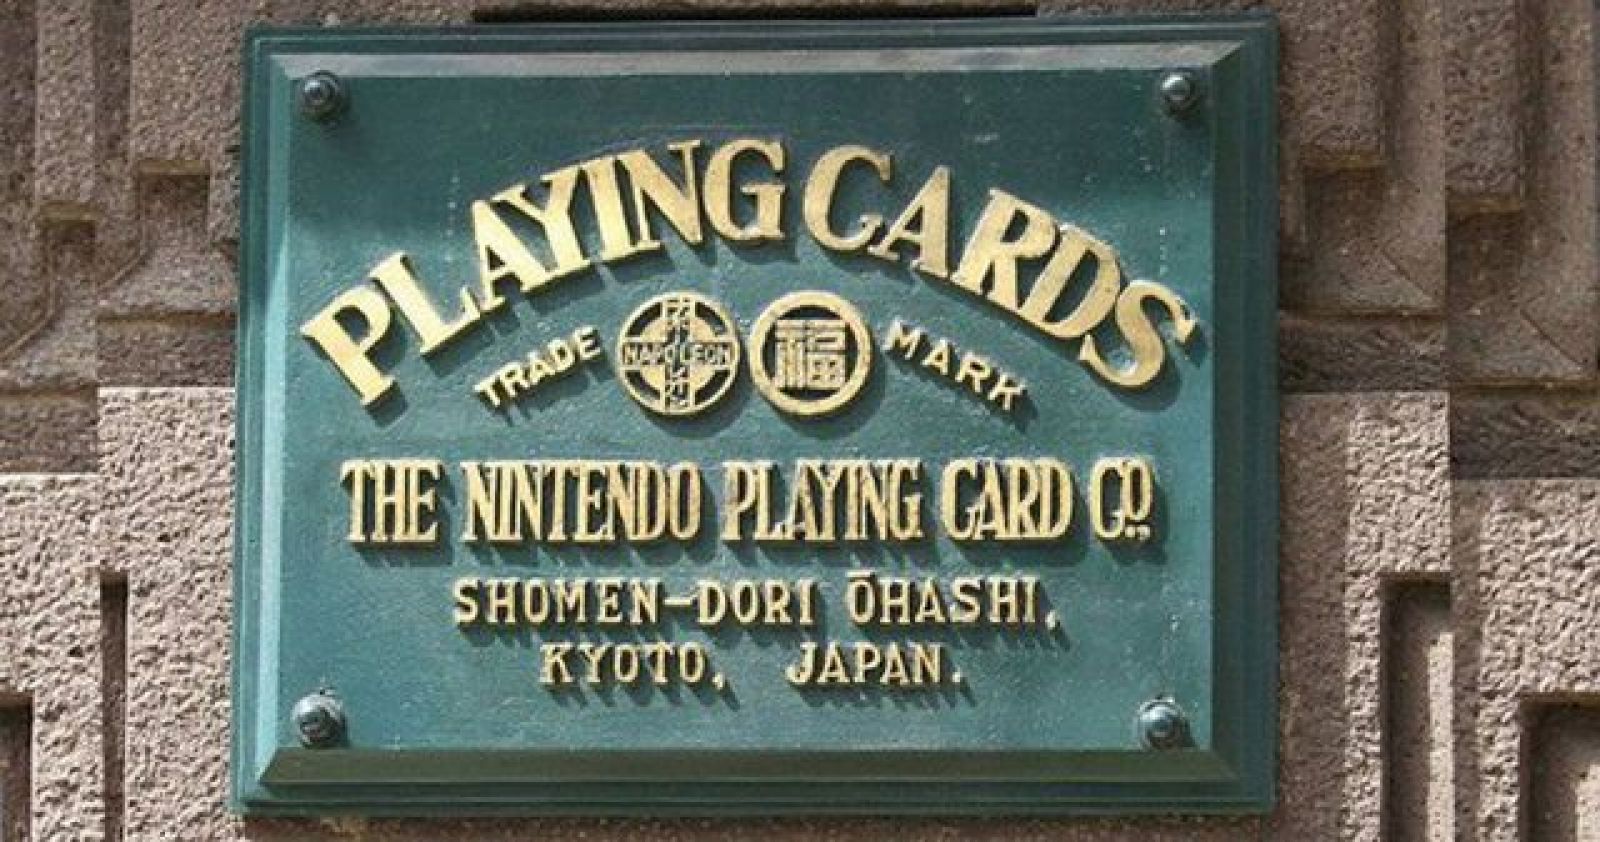 Công ty sản xuất game lớn nhất thế giới Nintendo đã từng là một công ty nhỏ sản xuất những bộ bài có tên 